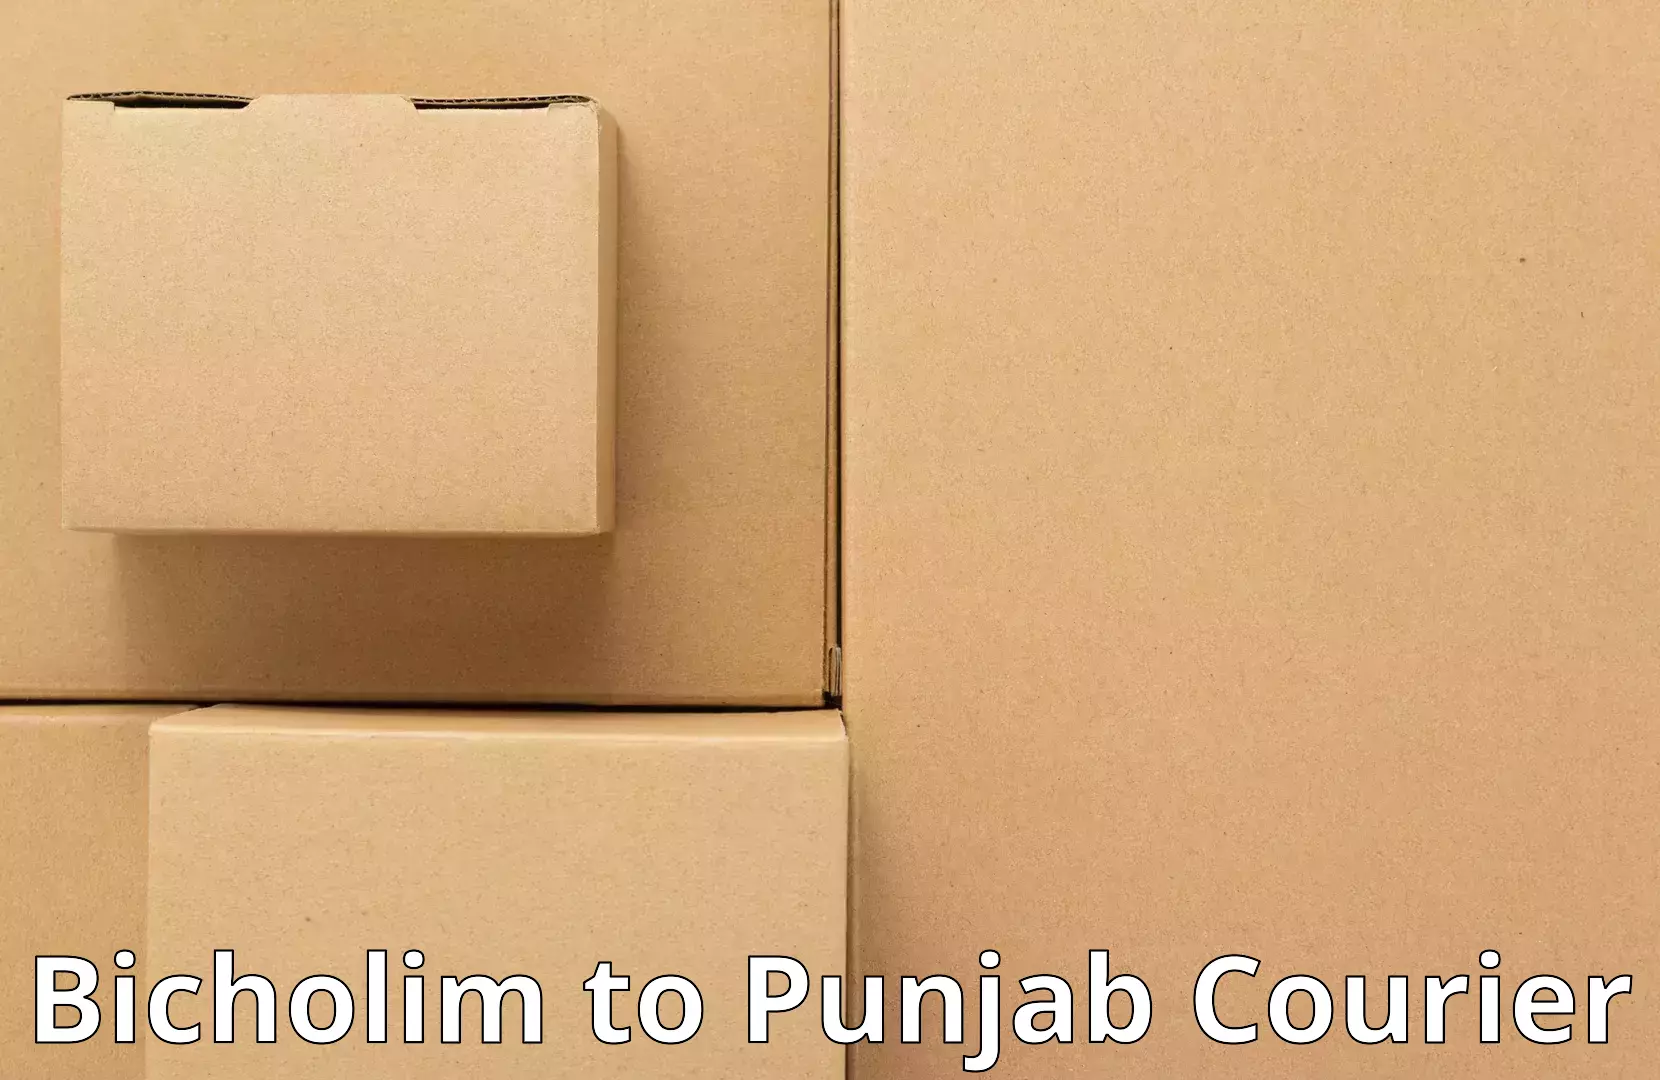 Household transport experts Bicholim to Punjab